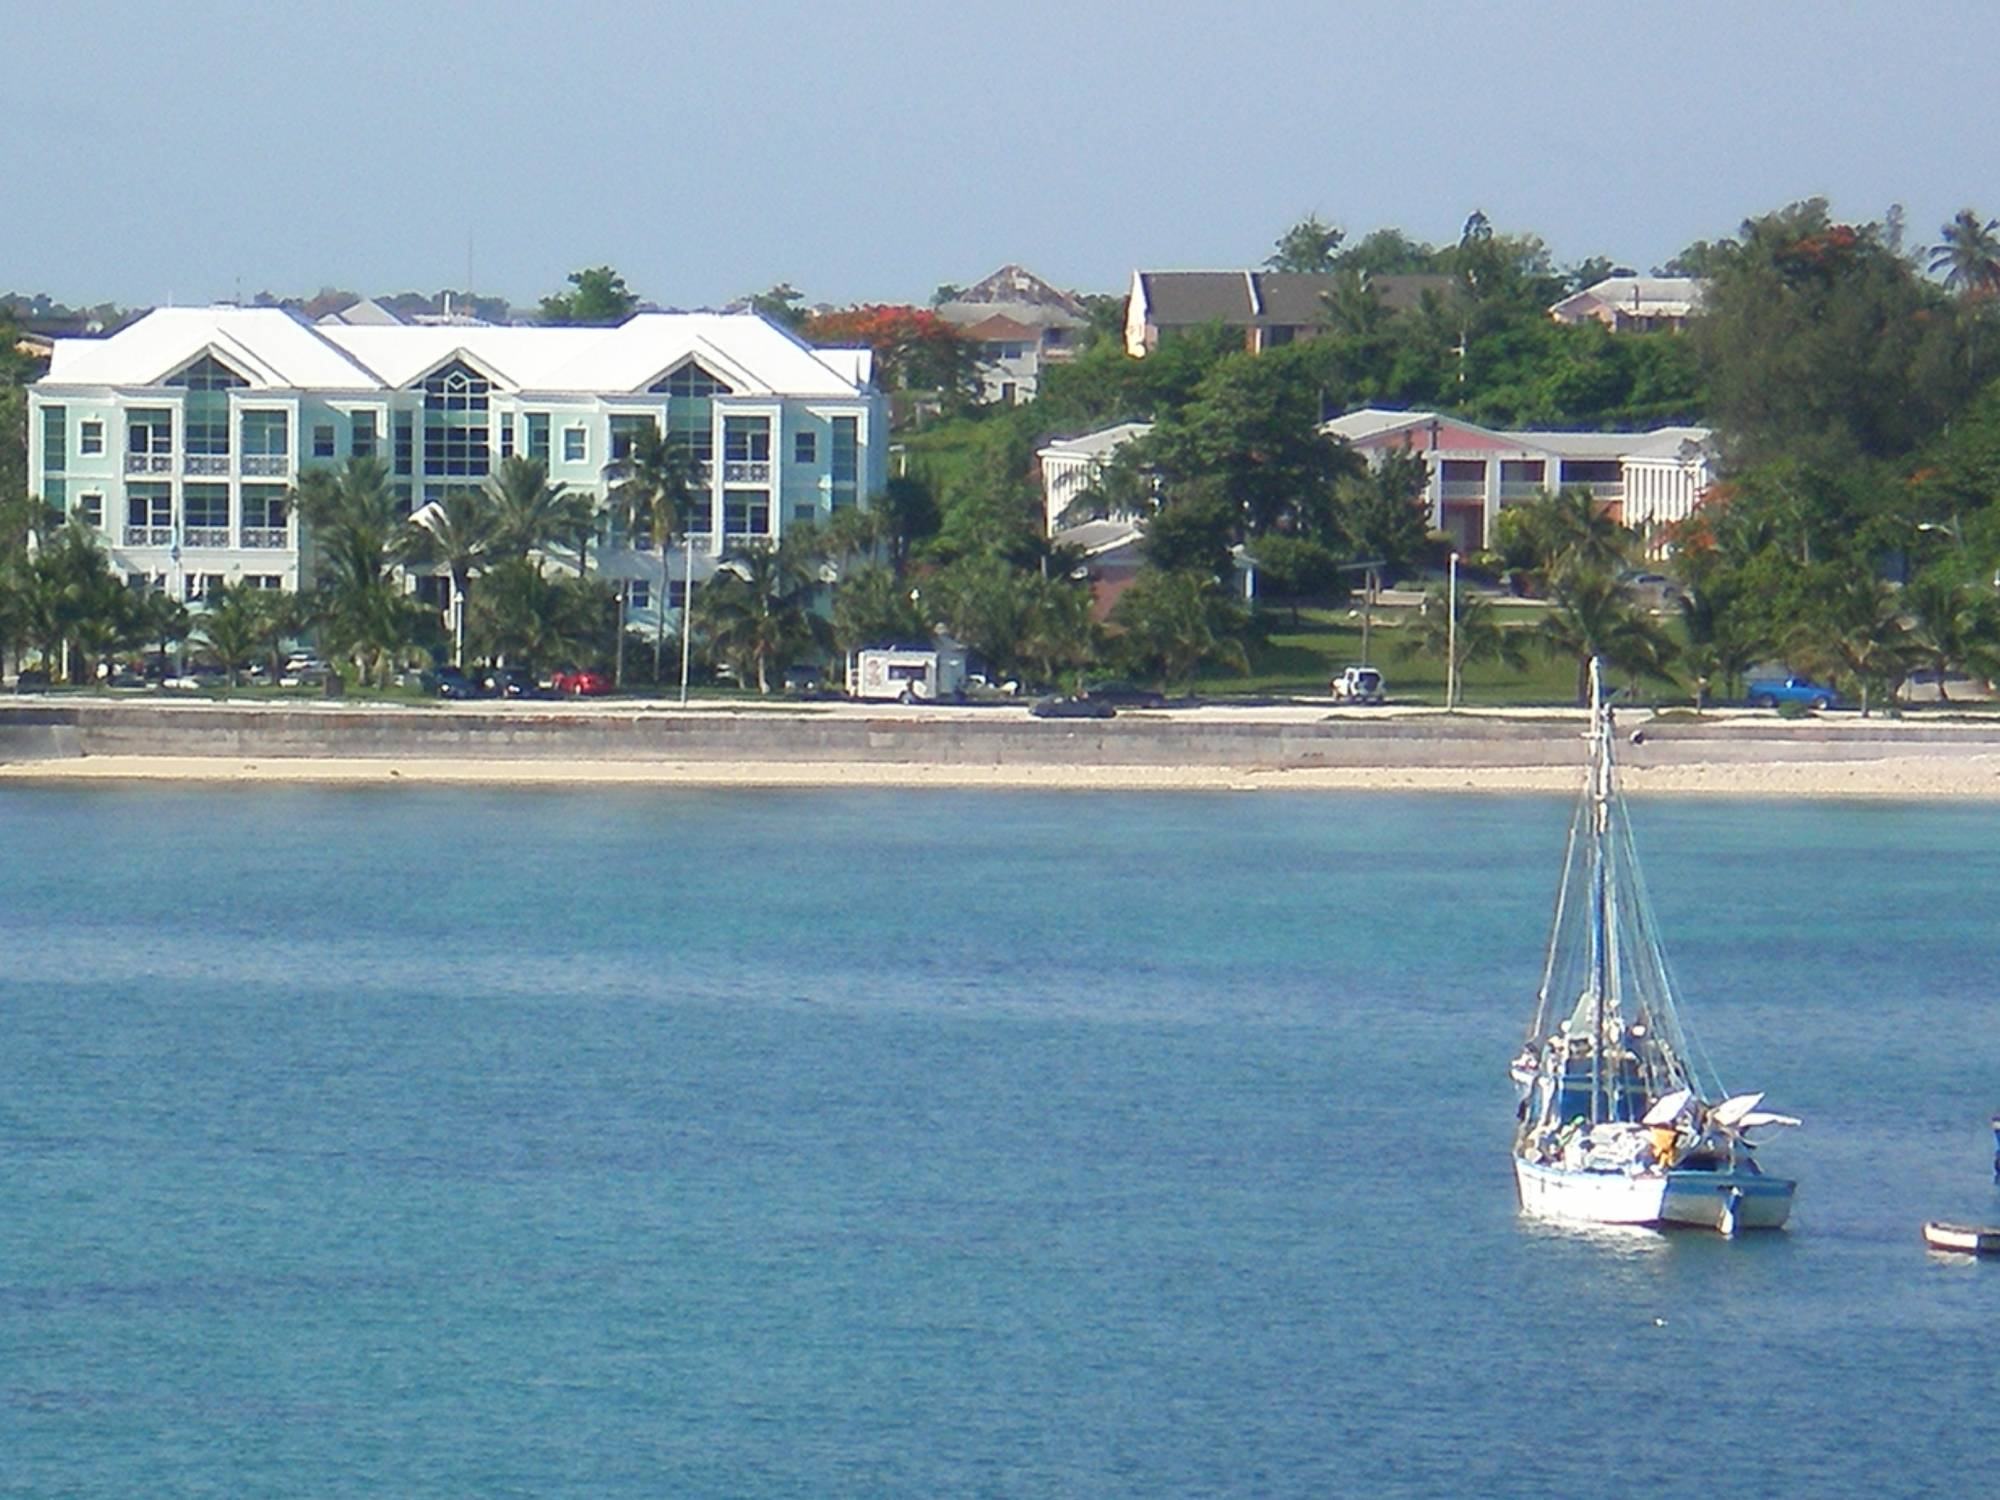 View from Category 6 Veranda: Nassau